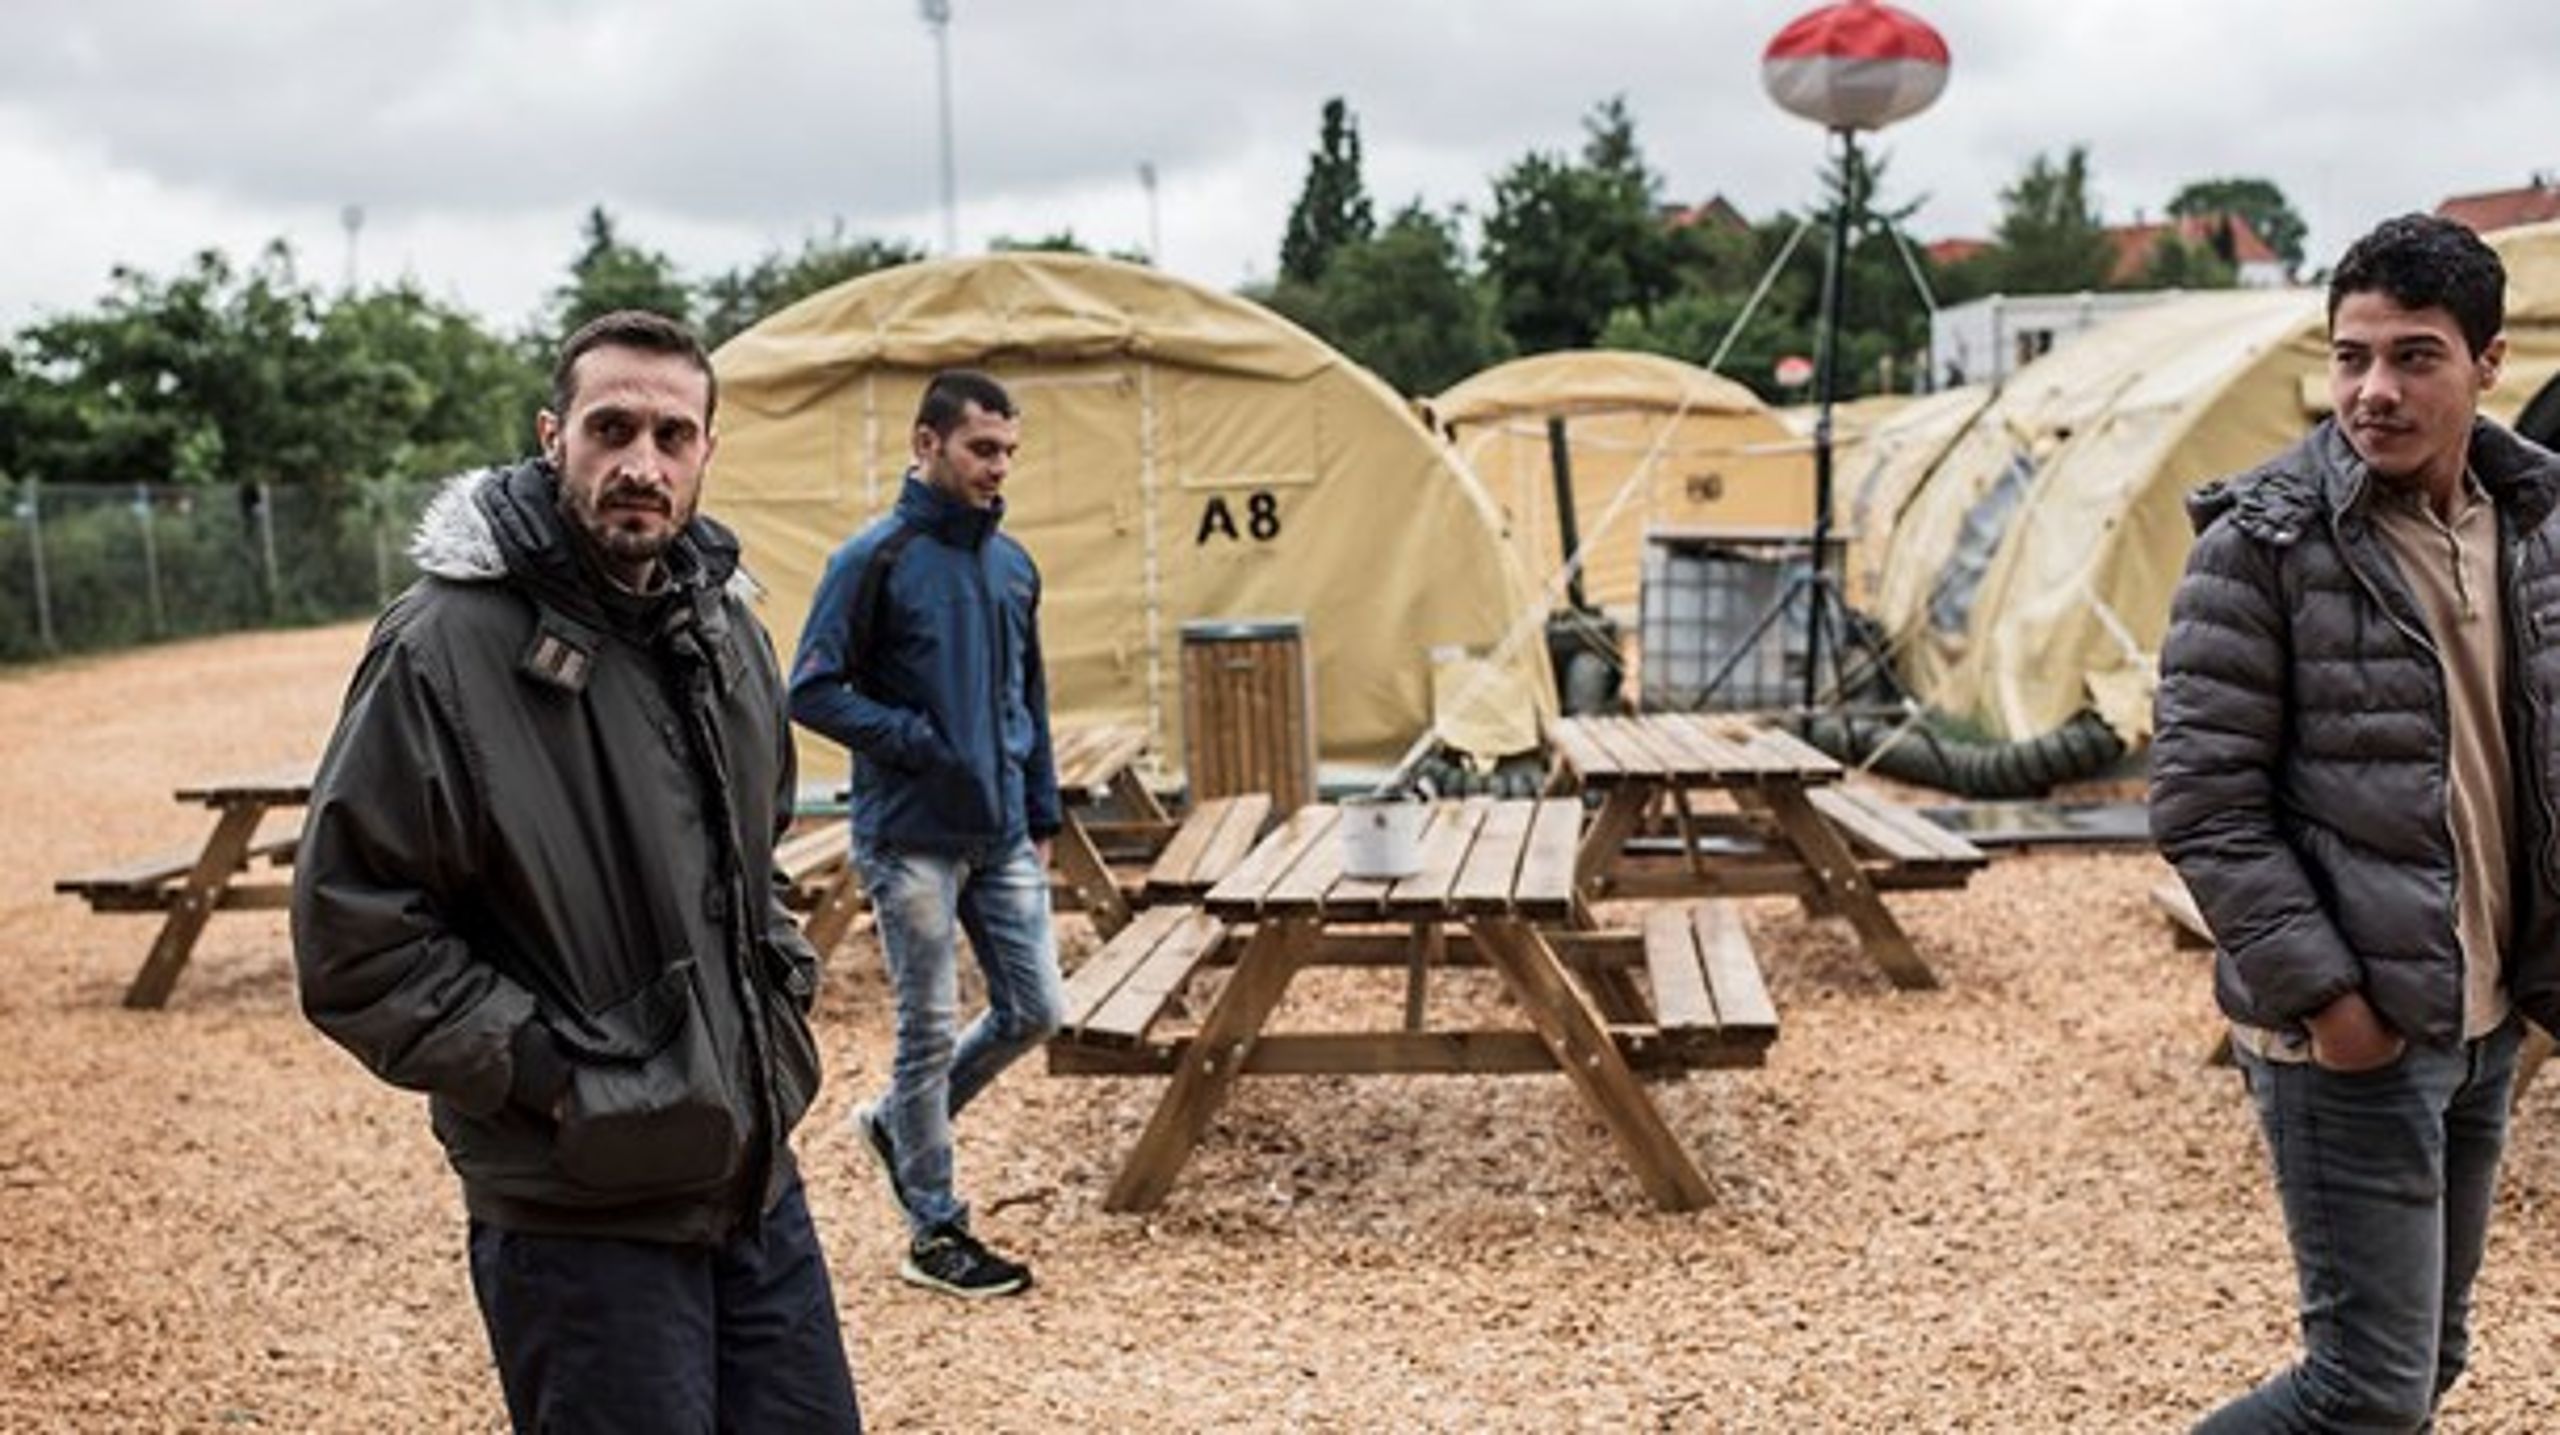 Som følge af det lavere asyltal har Udlændingestyrelsen lukket de omdiskuterede asylteltlejre.